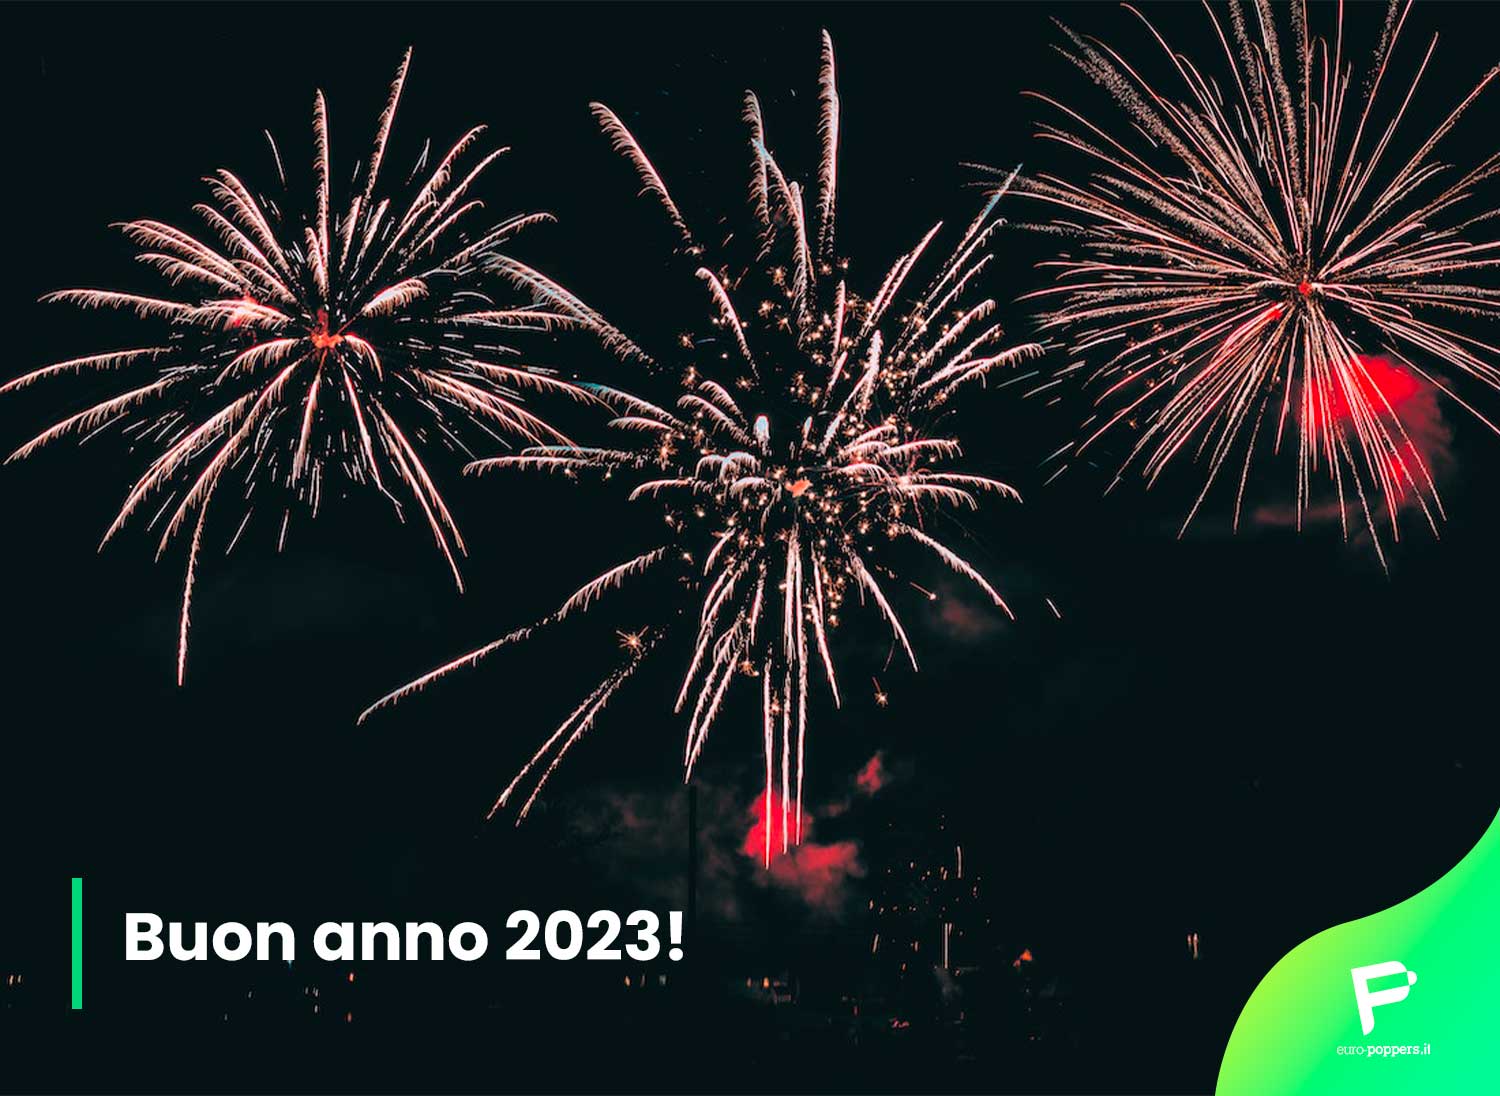 Al momento stai visualizzando Buon anno 2023!